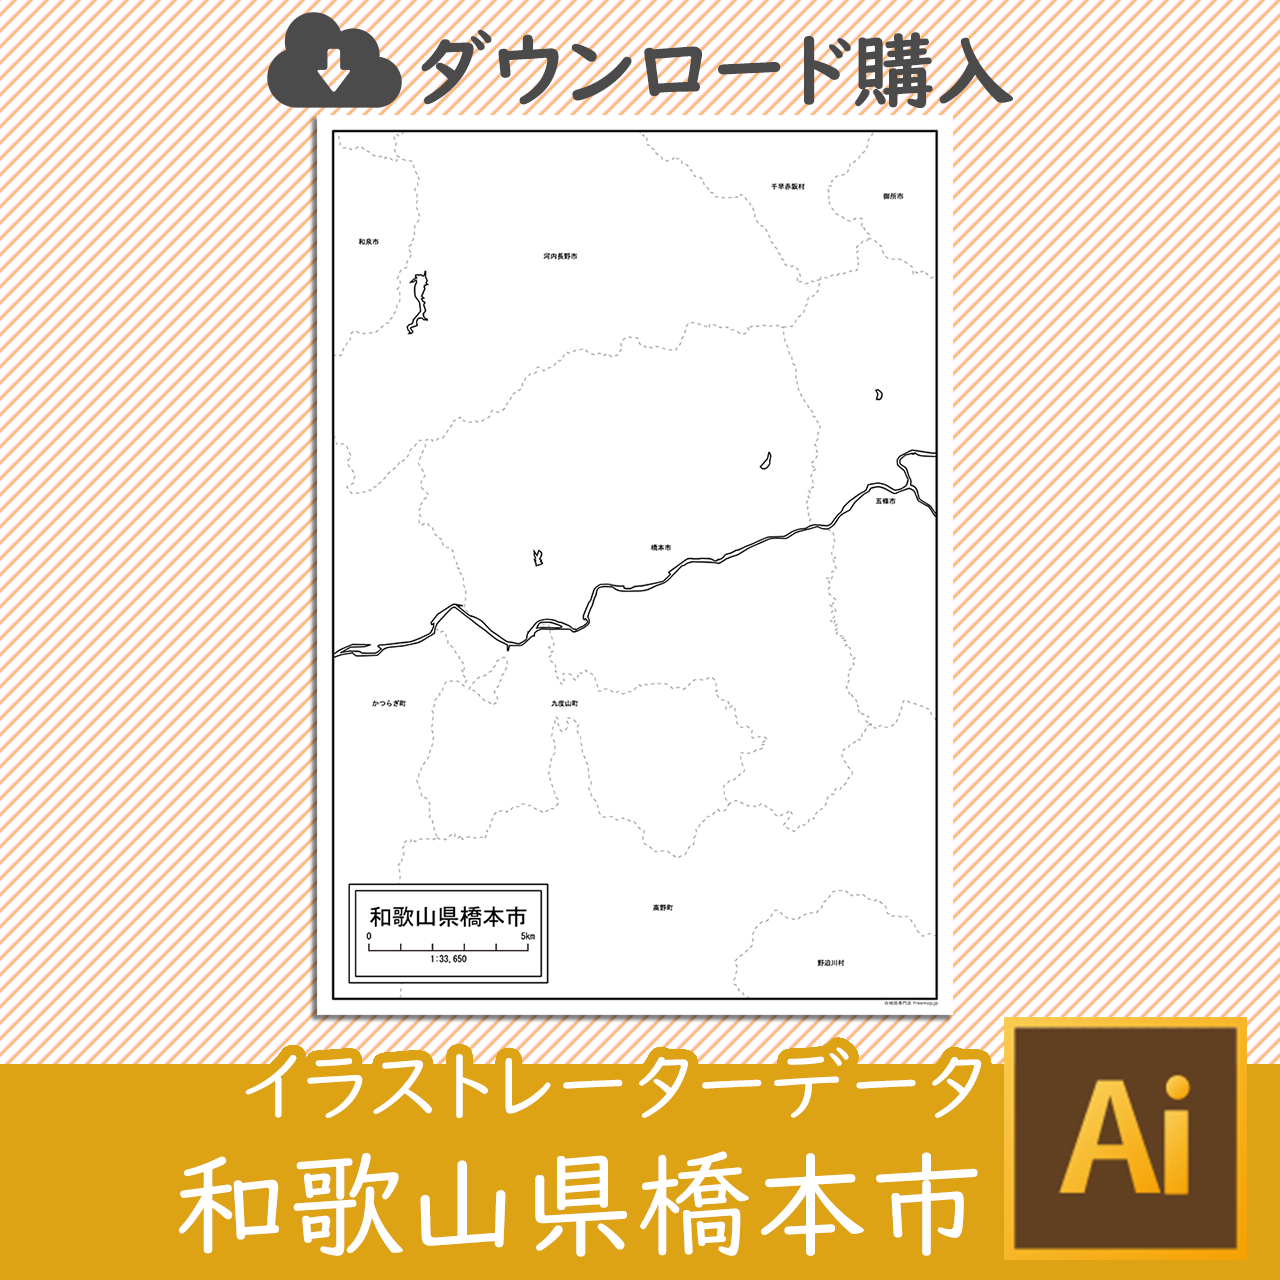 橋本市のaiデータのサムネイル画像